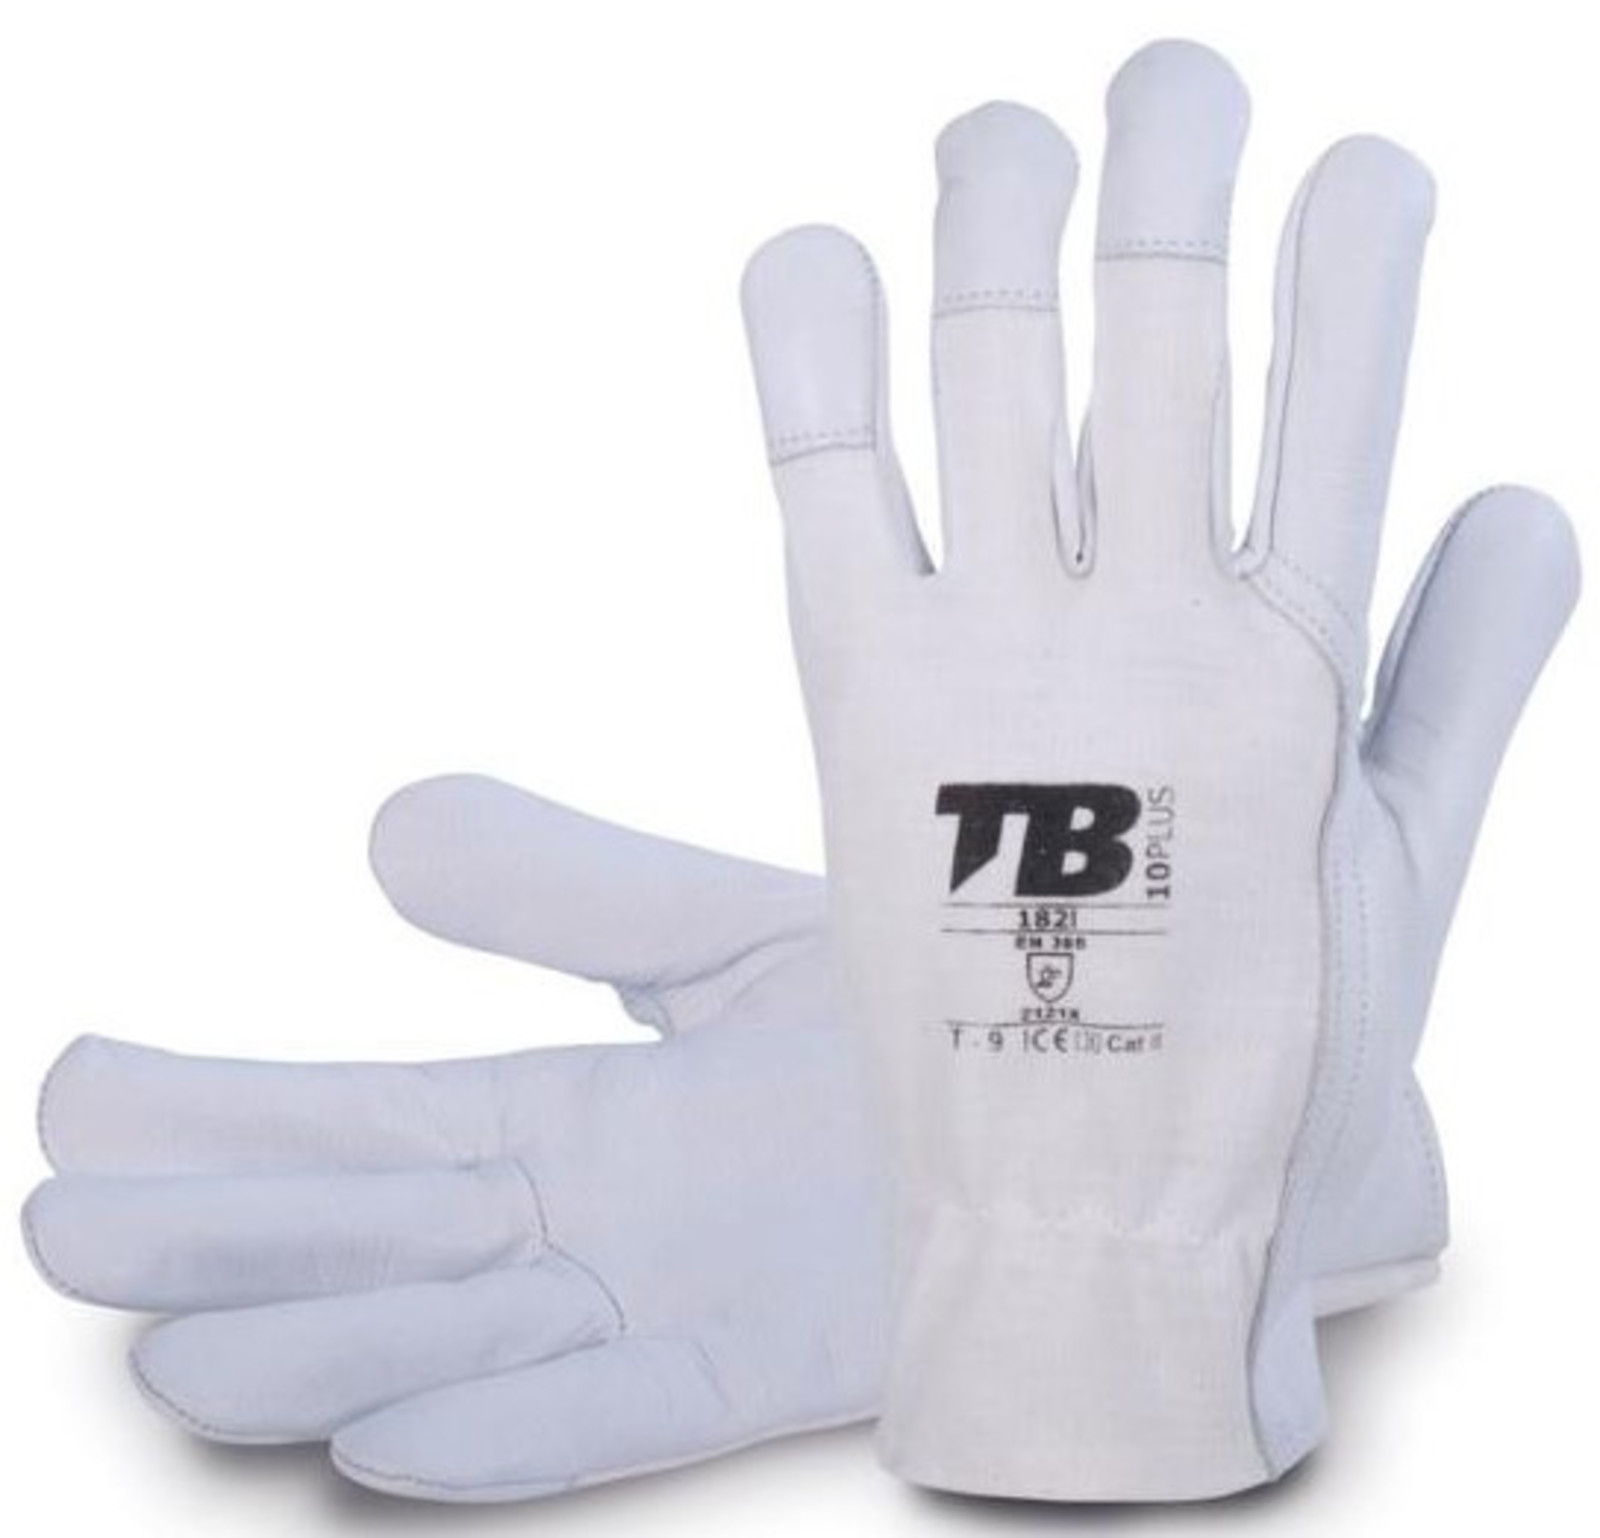 Pracovné rukavice TB 182IB kombinované - veľkosť: 10/XL